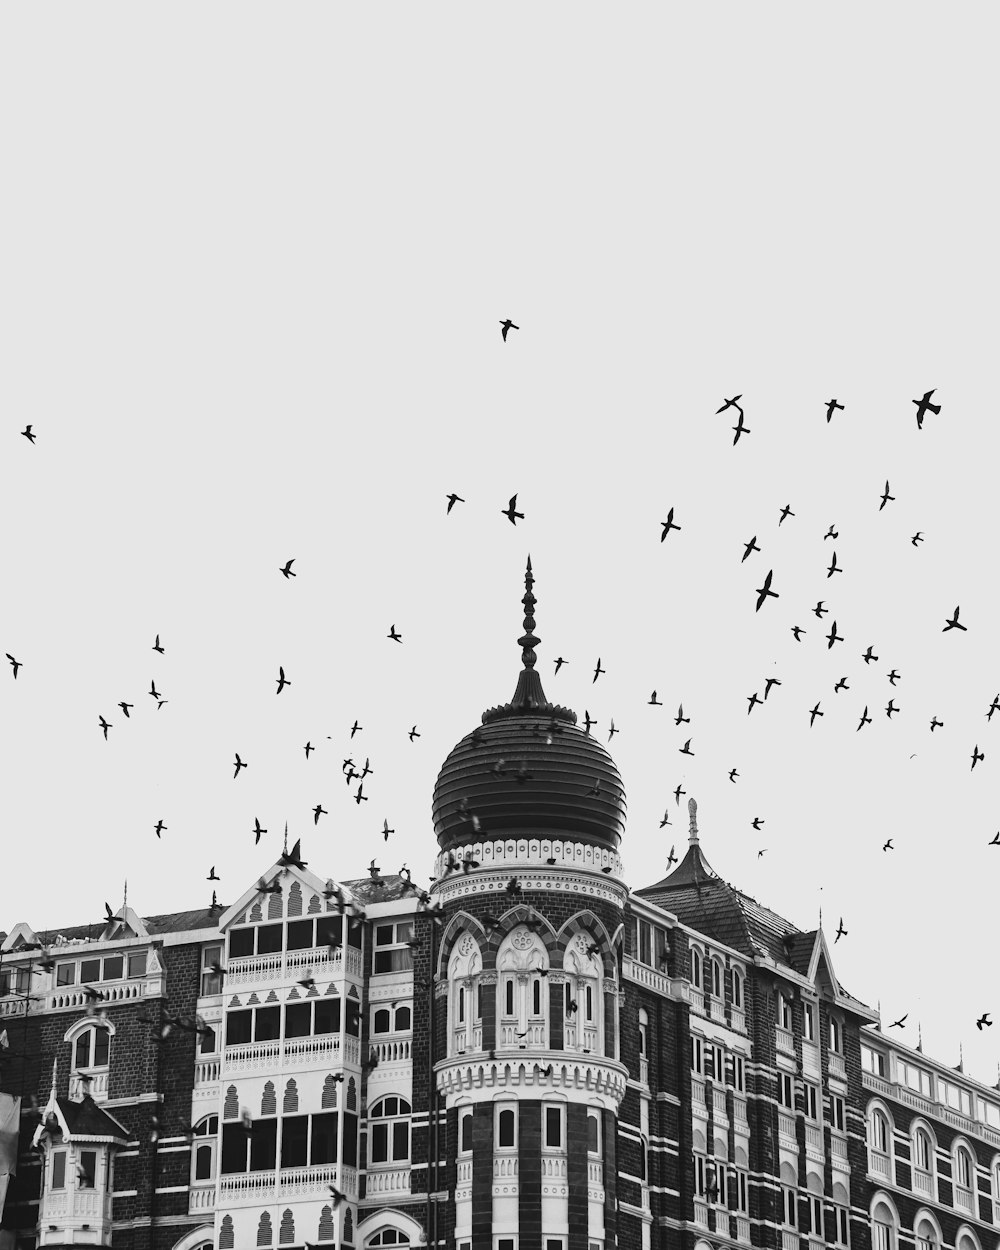 bandada de pájaros volando sobre el edificio en fotografía en escala de grises